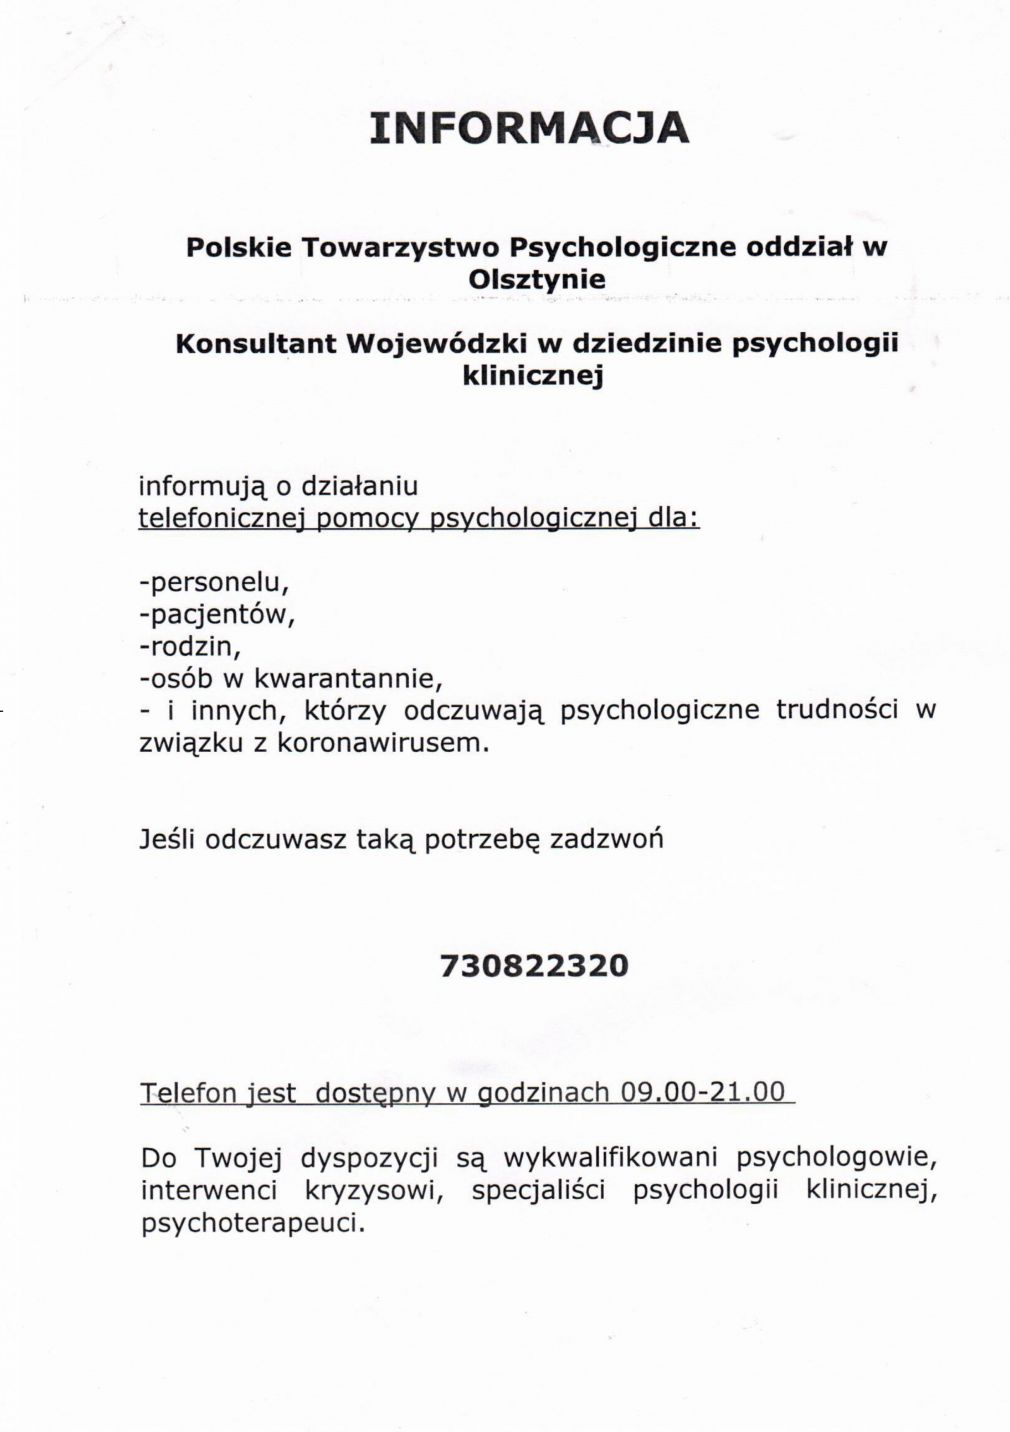 Informacja Polskiego Towarzystwa Psychologicznego oddział w Olsztynie